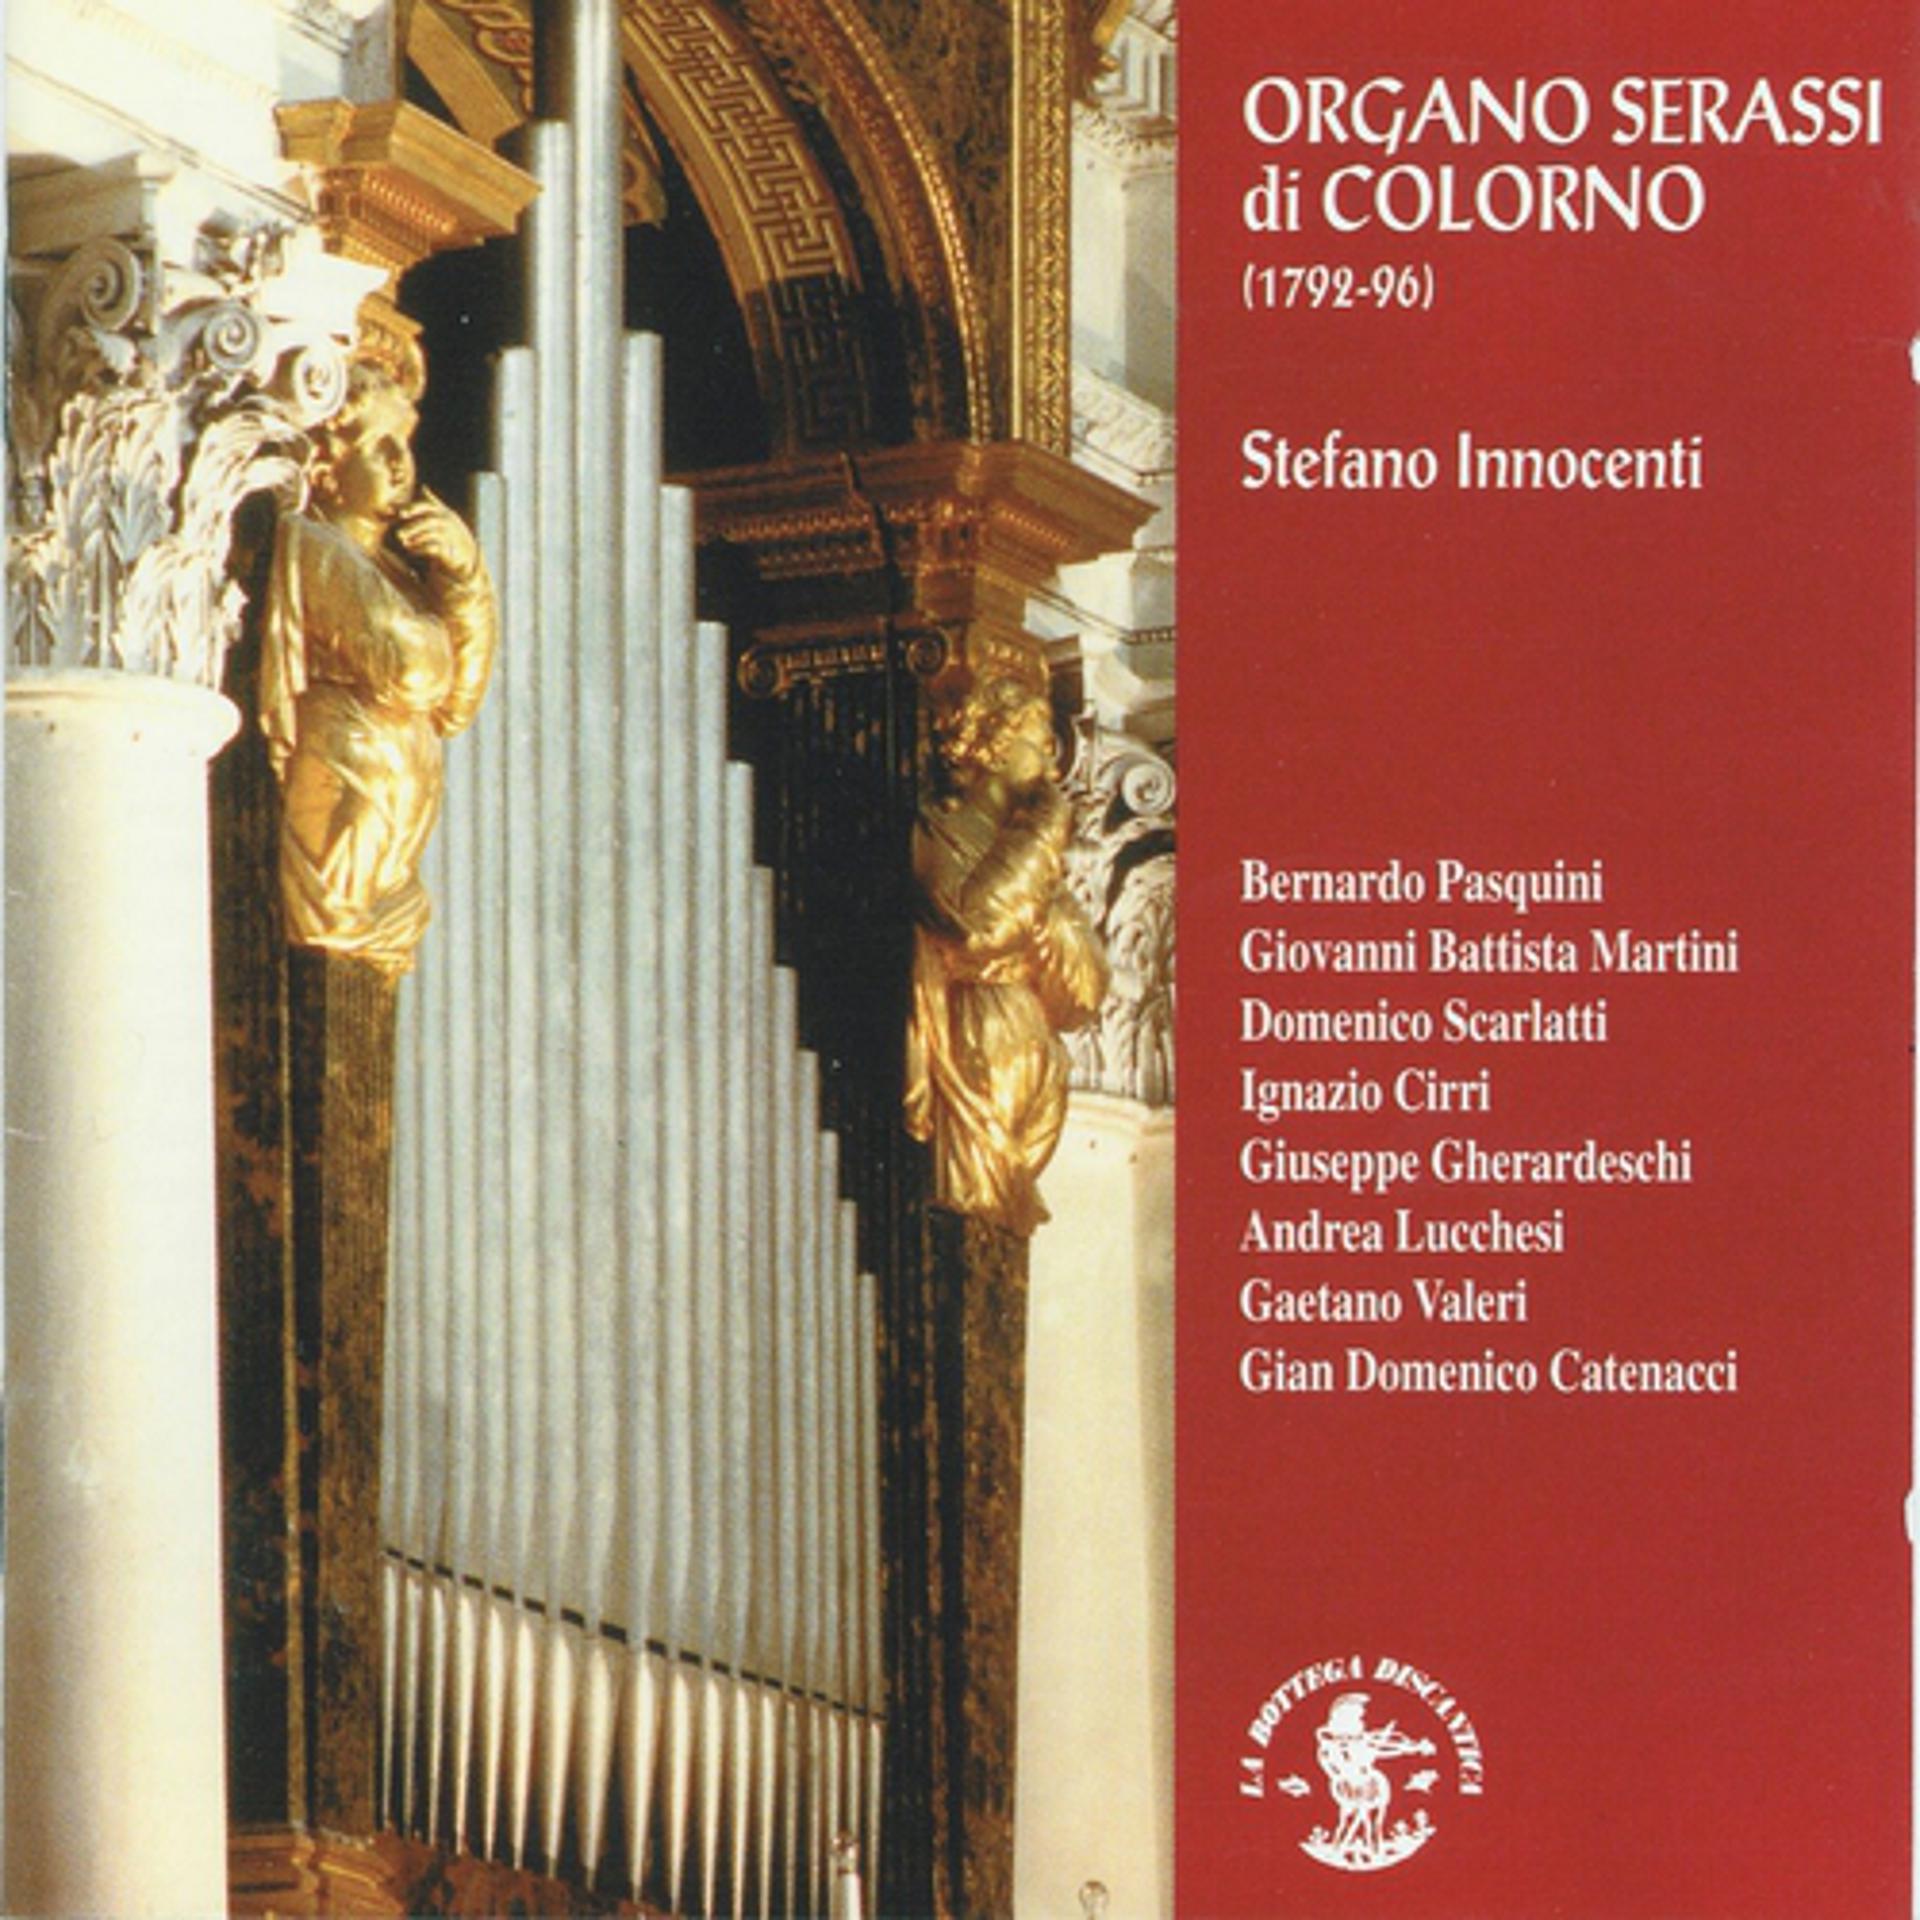 Постер альбома La Sonata organistica del XVIII secolo - Organo Serassi 1792-96 - Chiesa di S. Liborio - Colorno - Parma - Italia